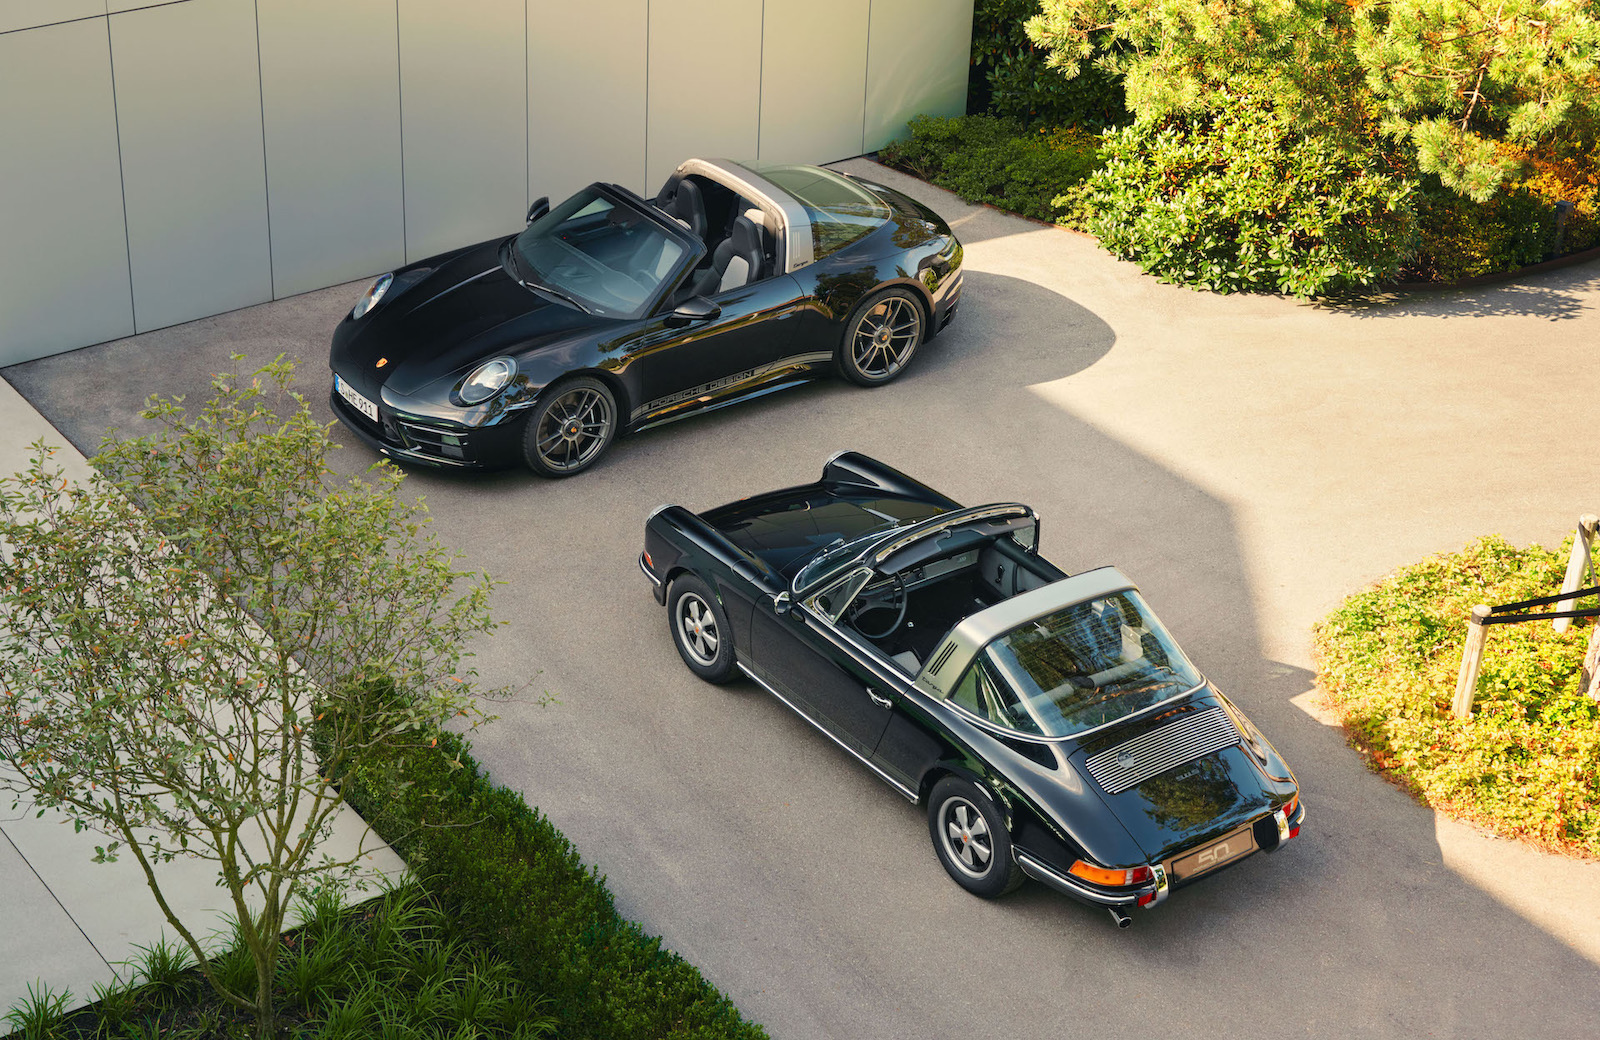 Porsche Design celebrates 50th anniversary with 911 Targa and restored classic